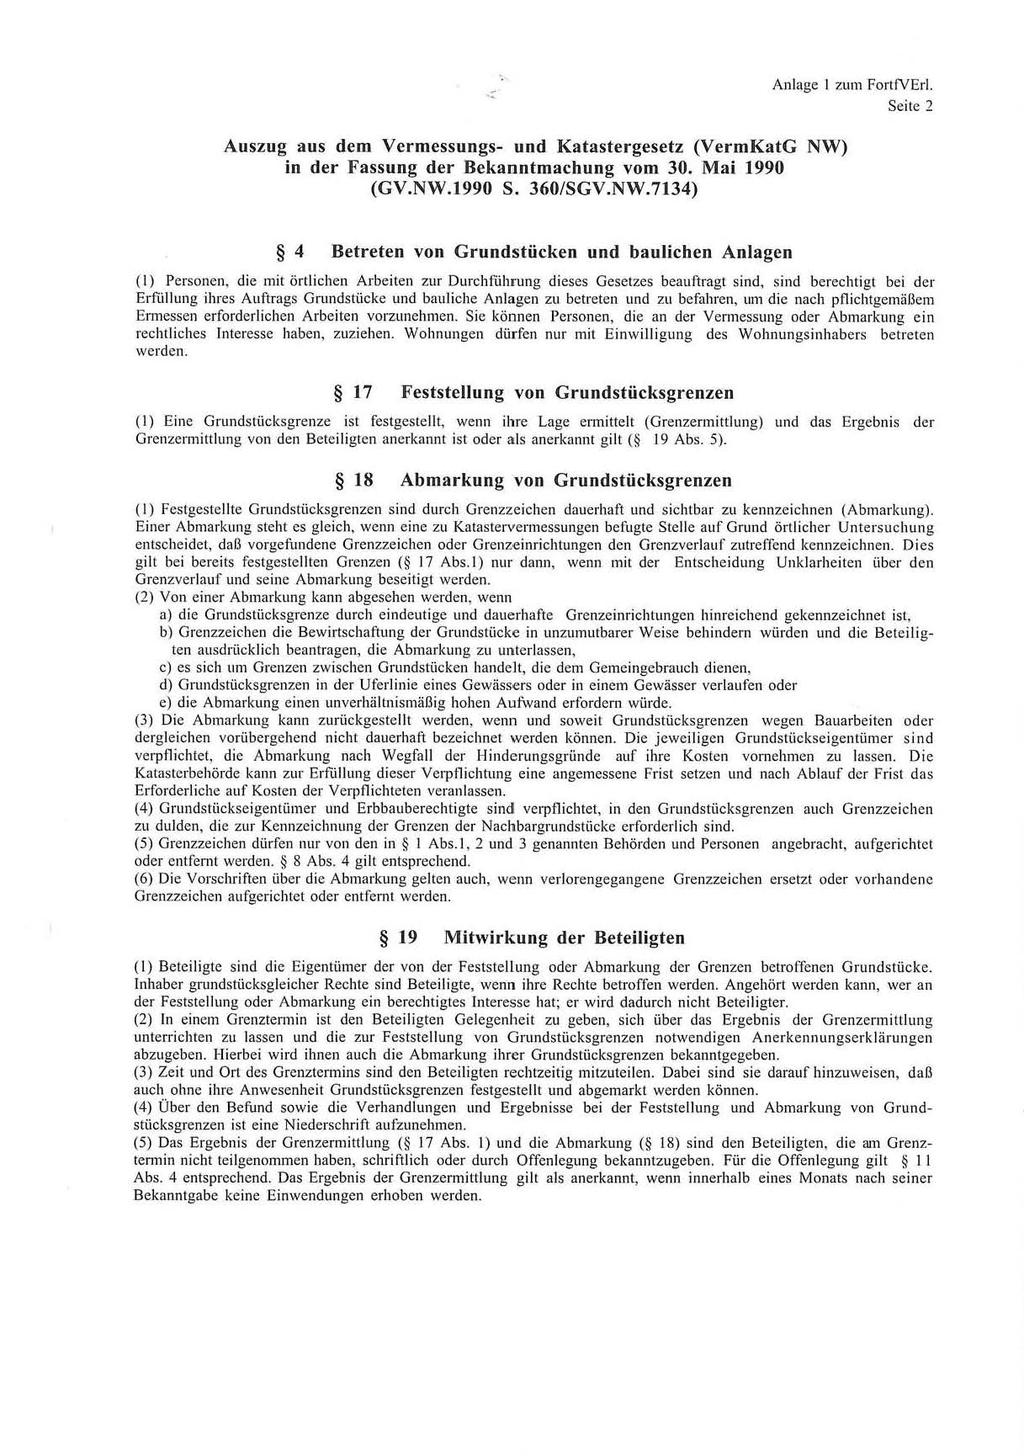 Auszug aus dem Vermessungs- und Katastergesetz (VermKatG NW) in der Fassung der Bekanntmachung vom 30. Mai 1990 (GV.NW.1990 S. 360/SGV.NW.7134) Anlage 1 zum FortfVErl.